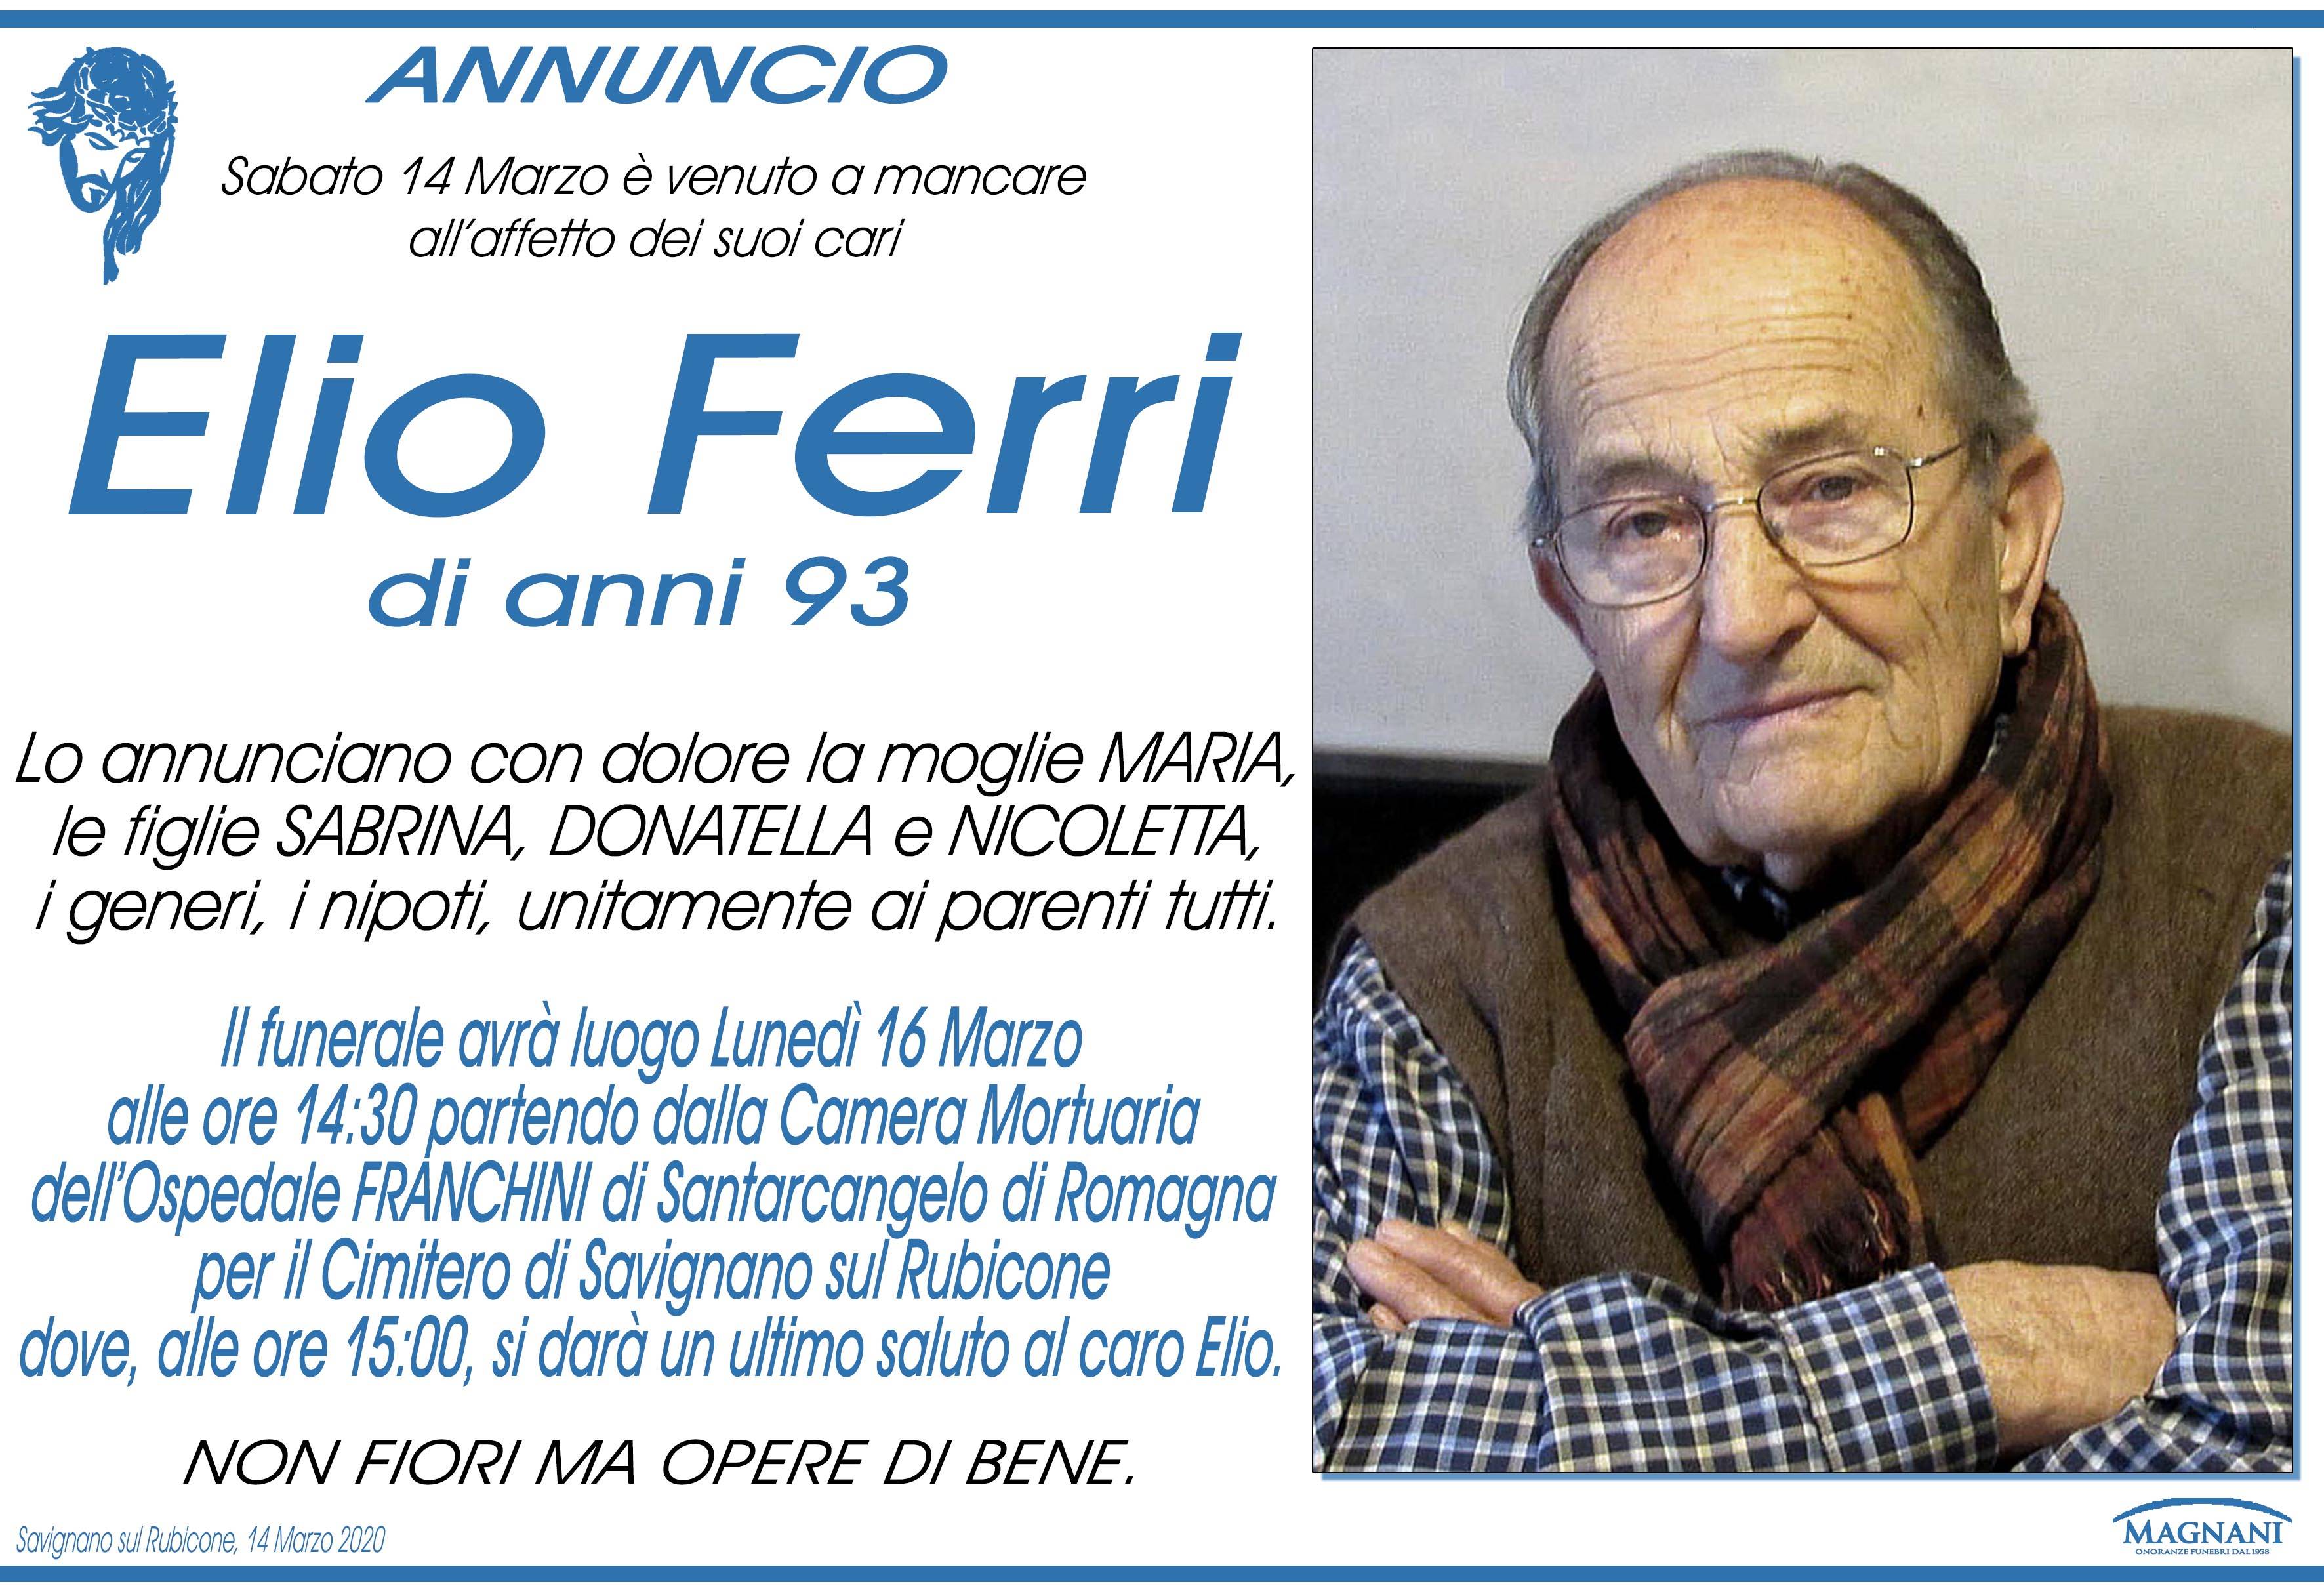 Elio Ferri